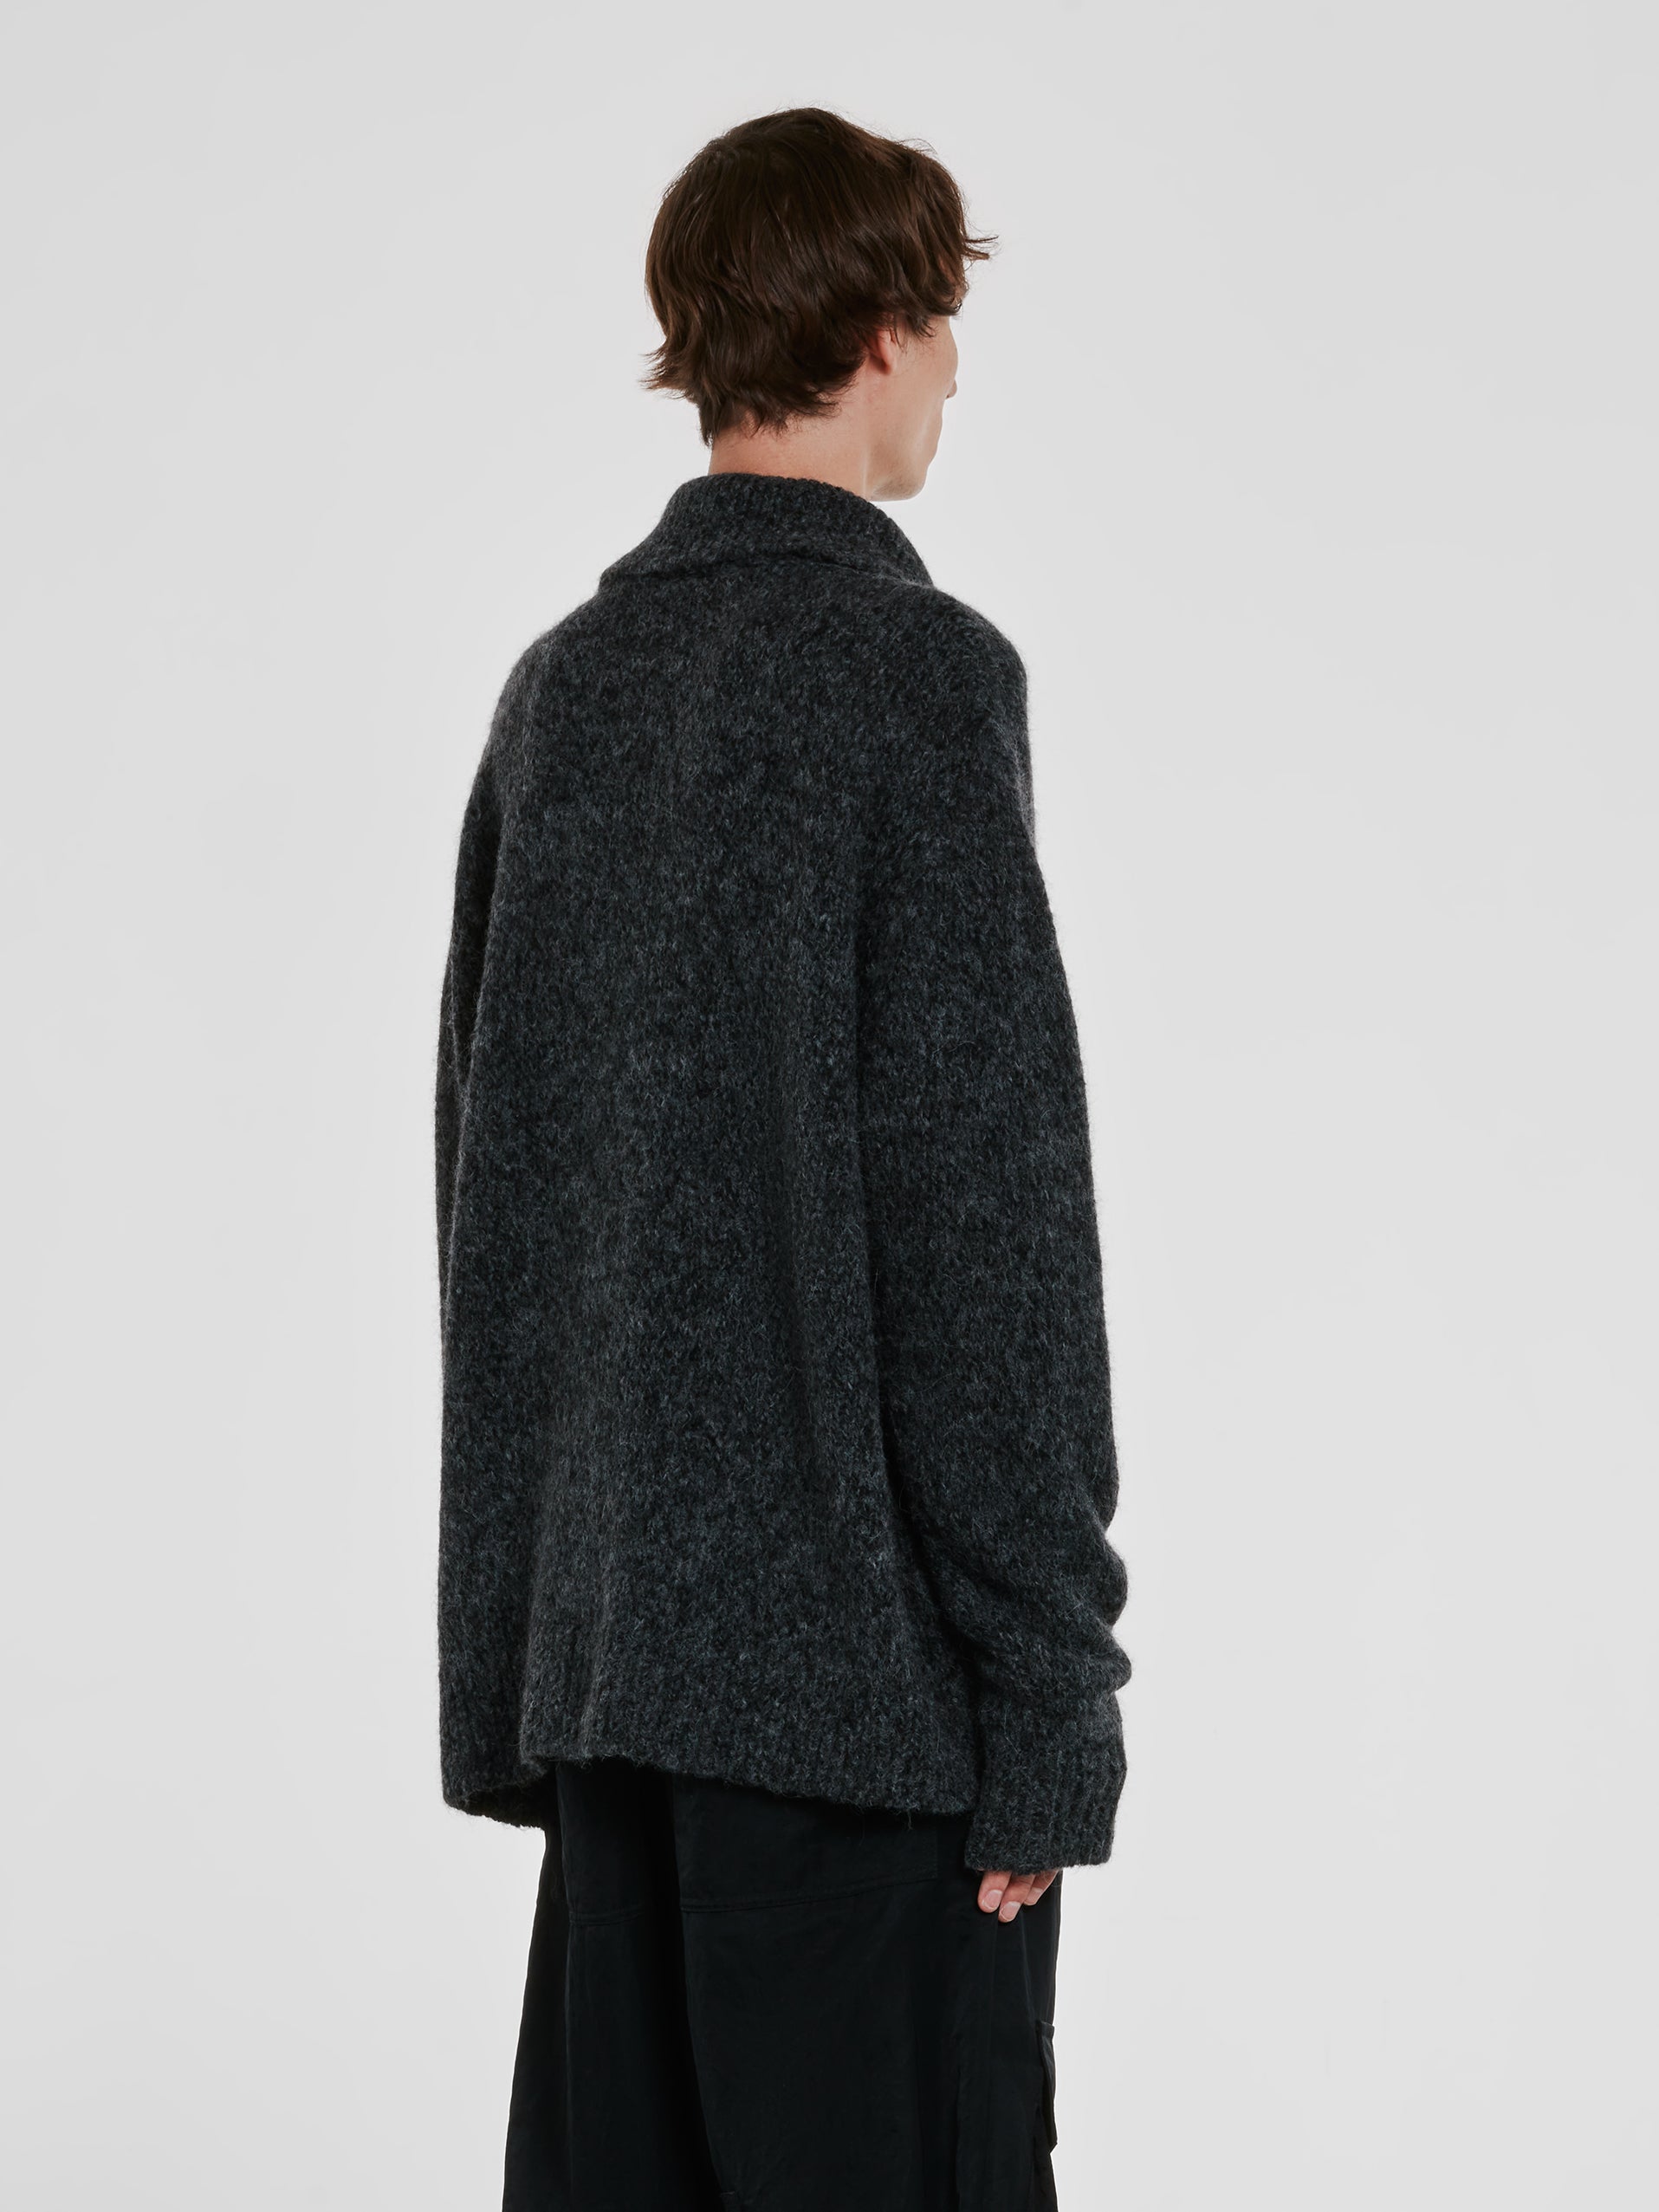 Dries Van Noten - Men’s Collared Sweater - (Grey) view 4